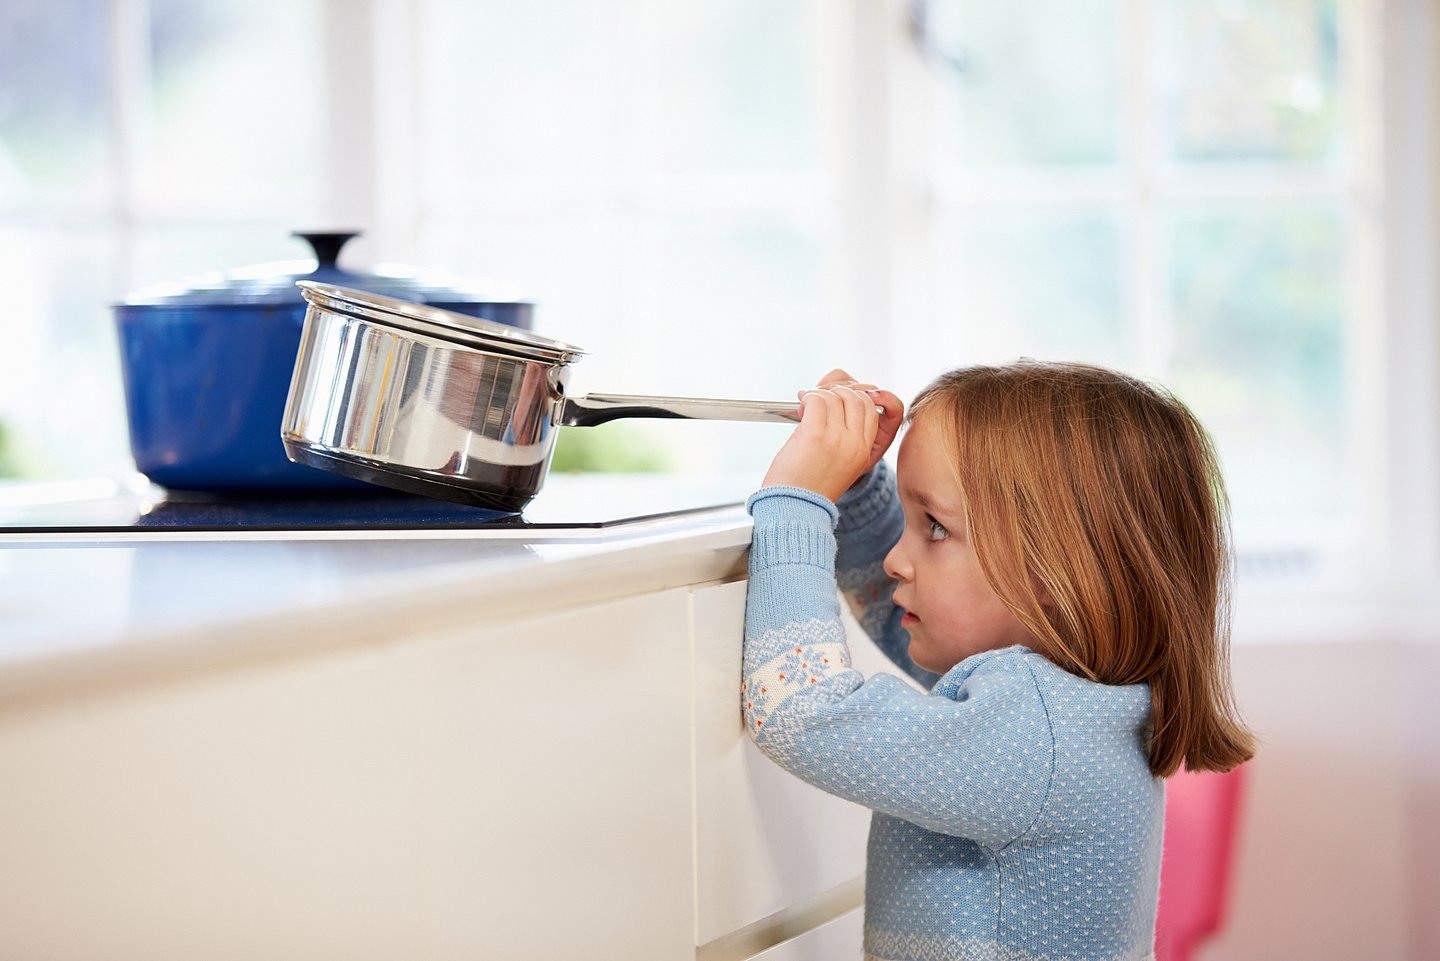 Das Foto zeigt ein kleines Kind, das vor einem Kochfeld steht, gerade so über die Kante schauen kann schauen und mit beiden Händen nach einem Topf mit Stilgriff greift, der auf dem Kochfeld steht.